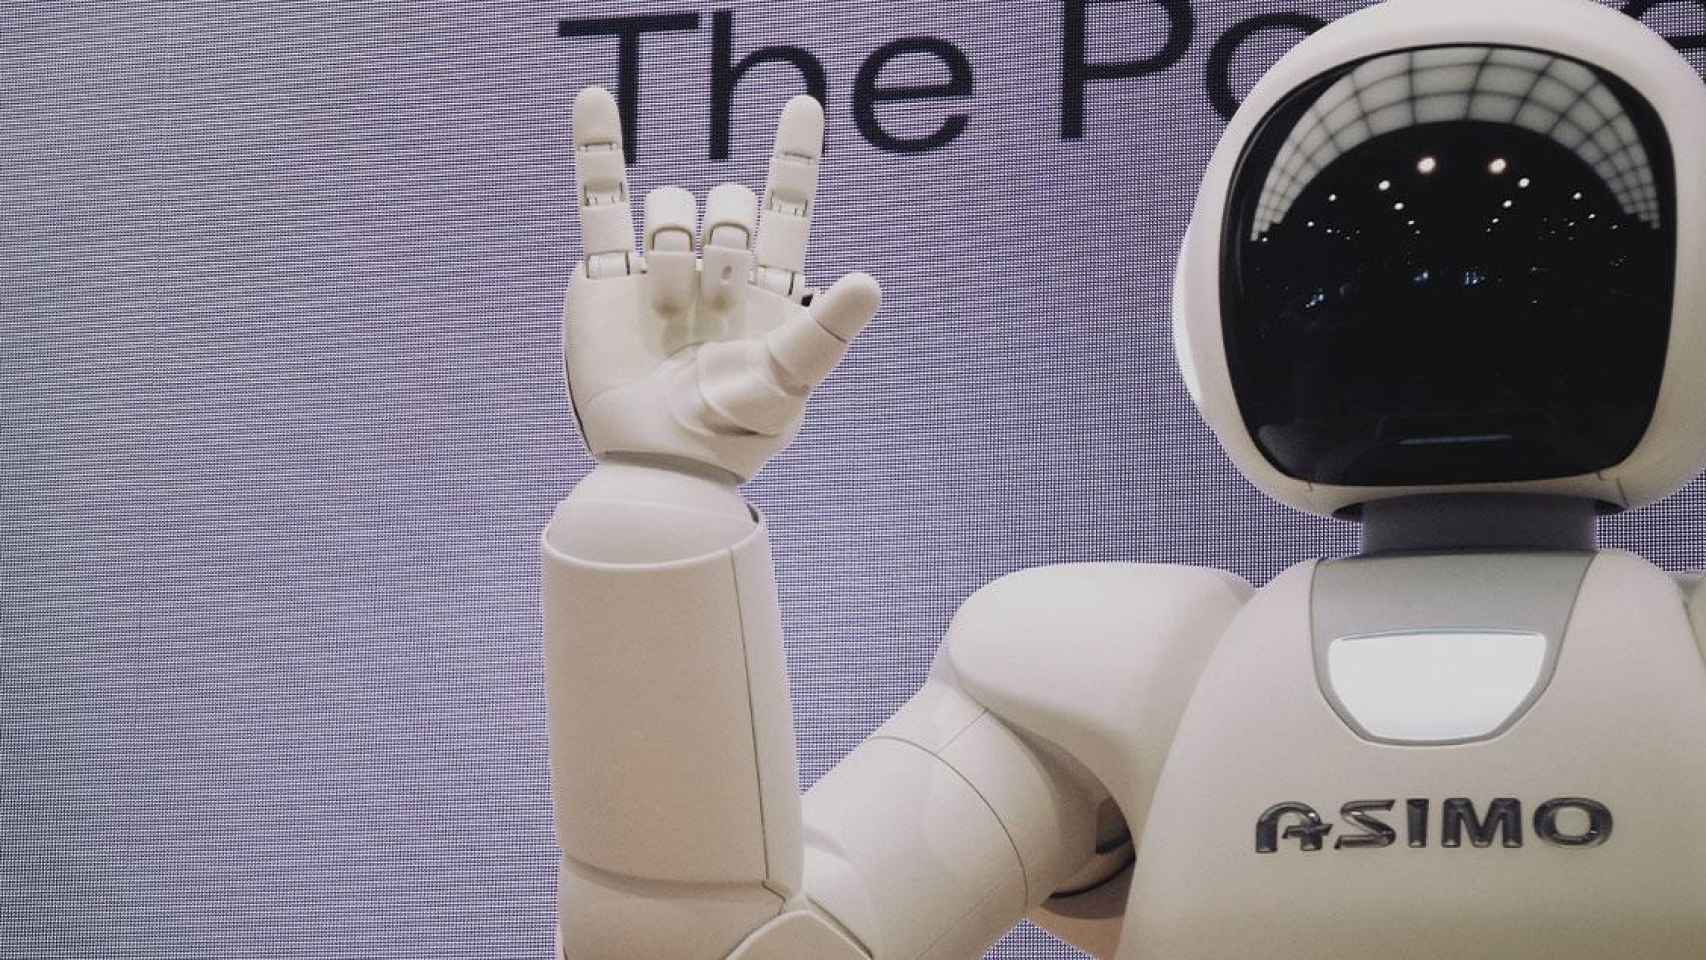 Robot, capaz de adquirir conciencia digital como en la serie Westworld, saludando / UNSPLASH